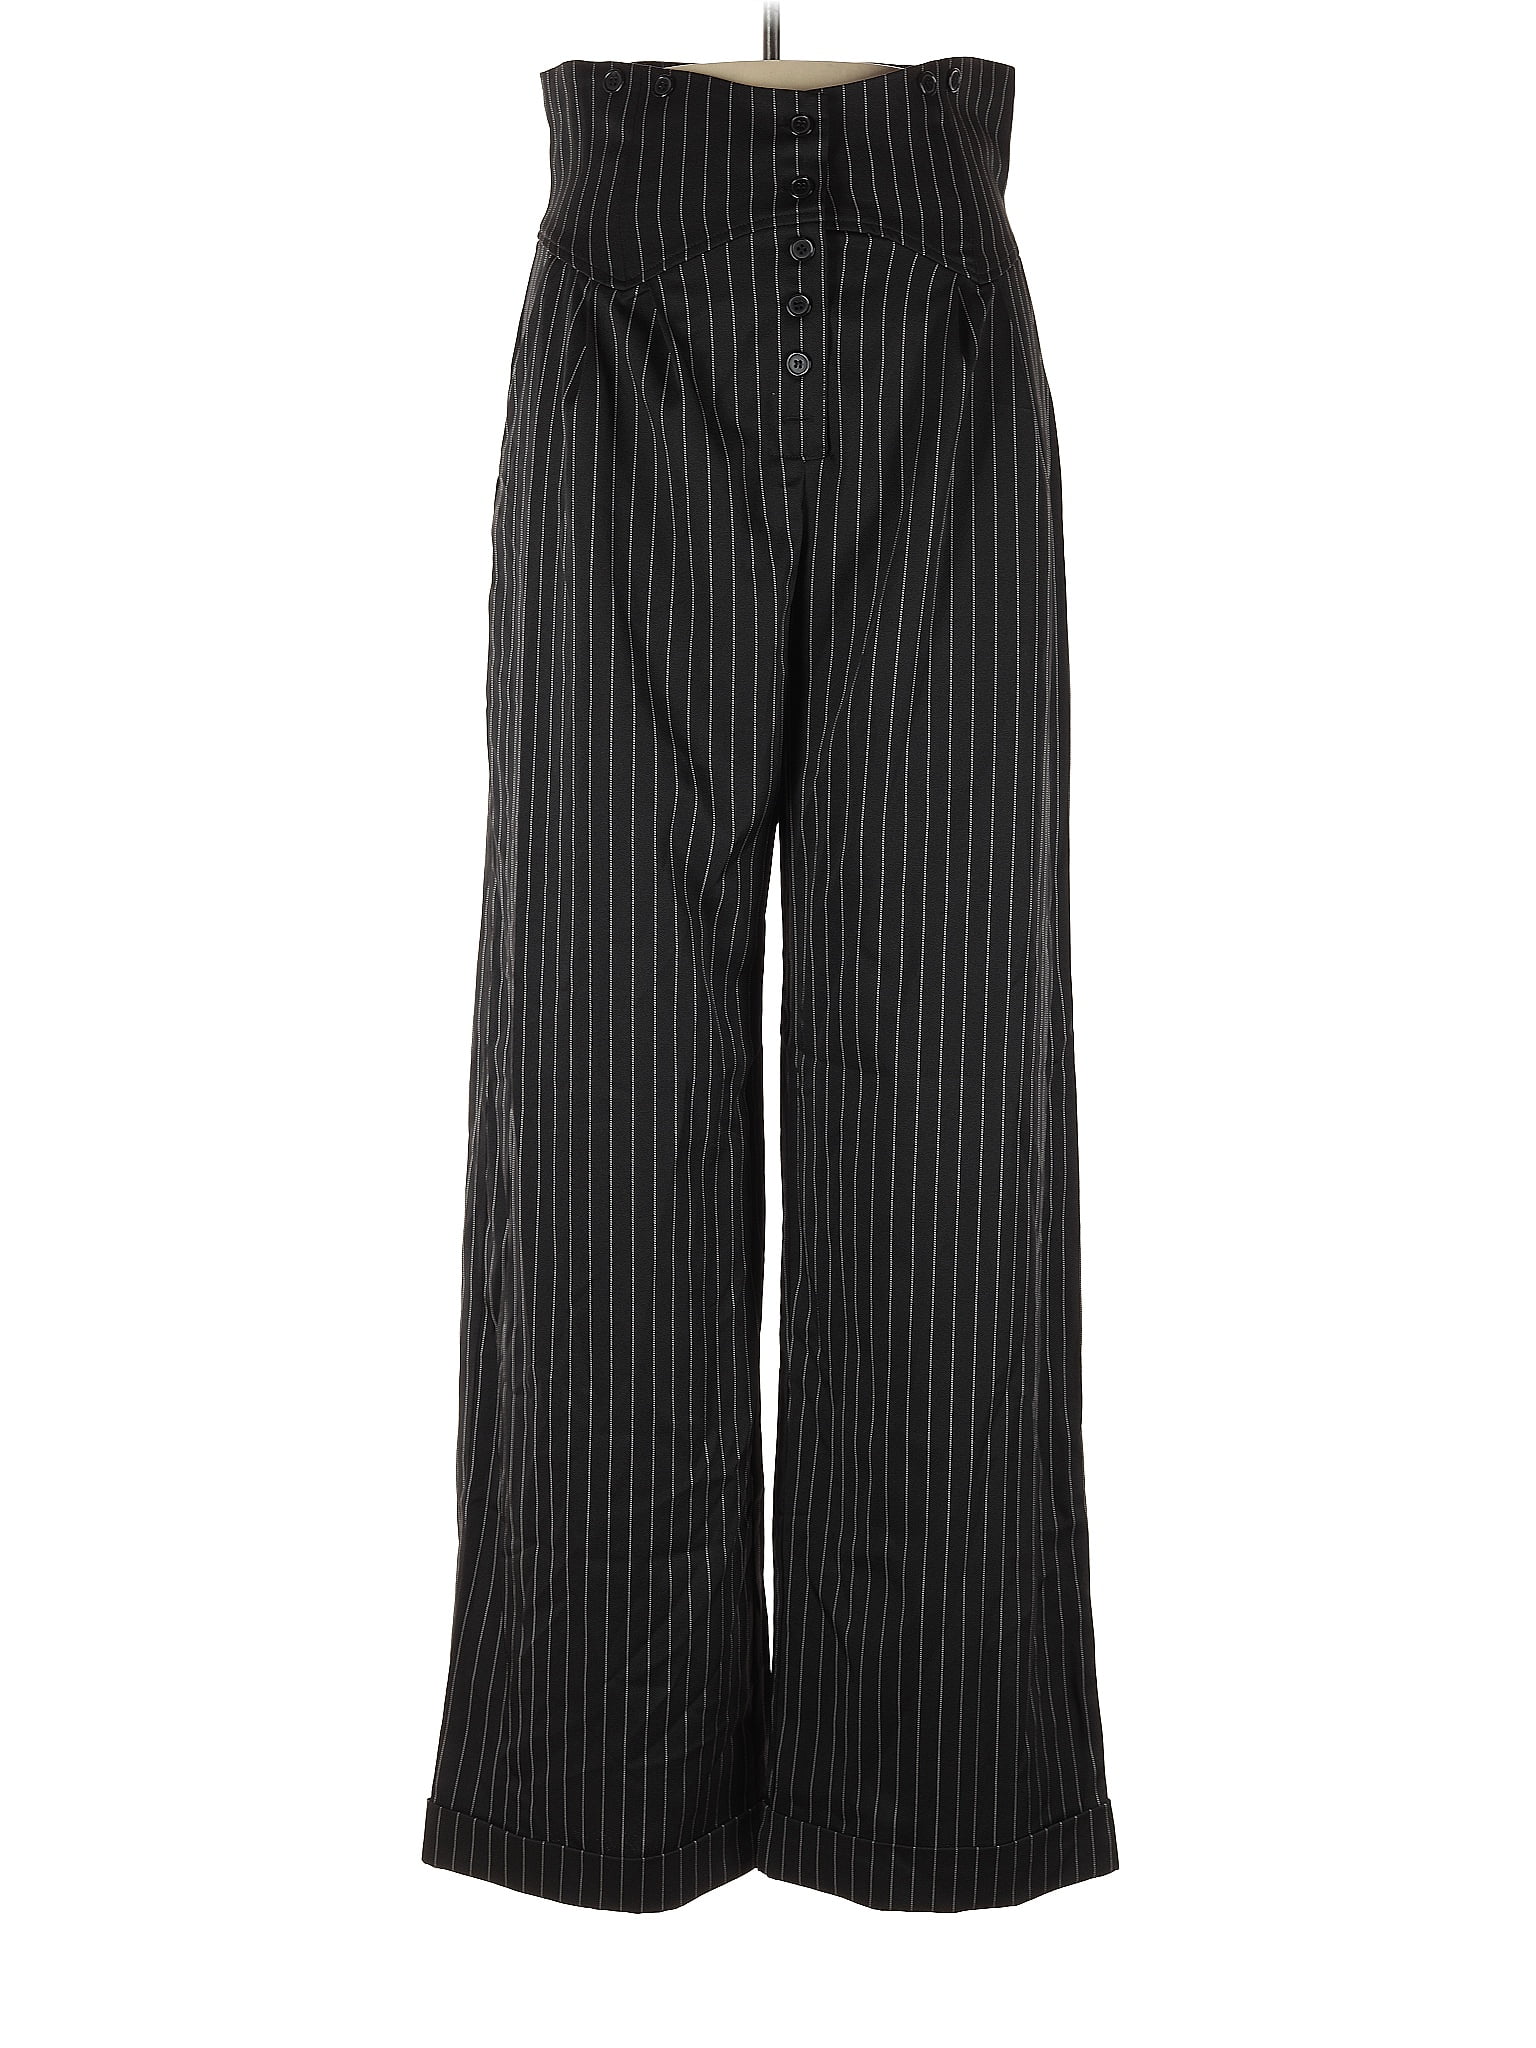 Unique Vintage Stripes Black Dress Pants Size 12 - 10 - 70% off | thredUP